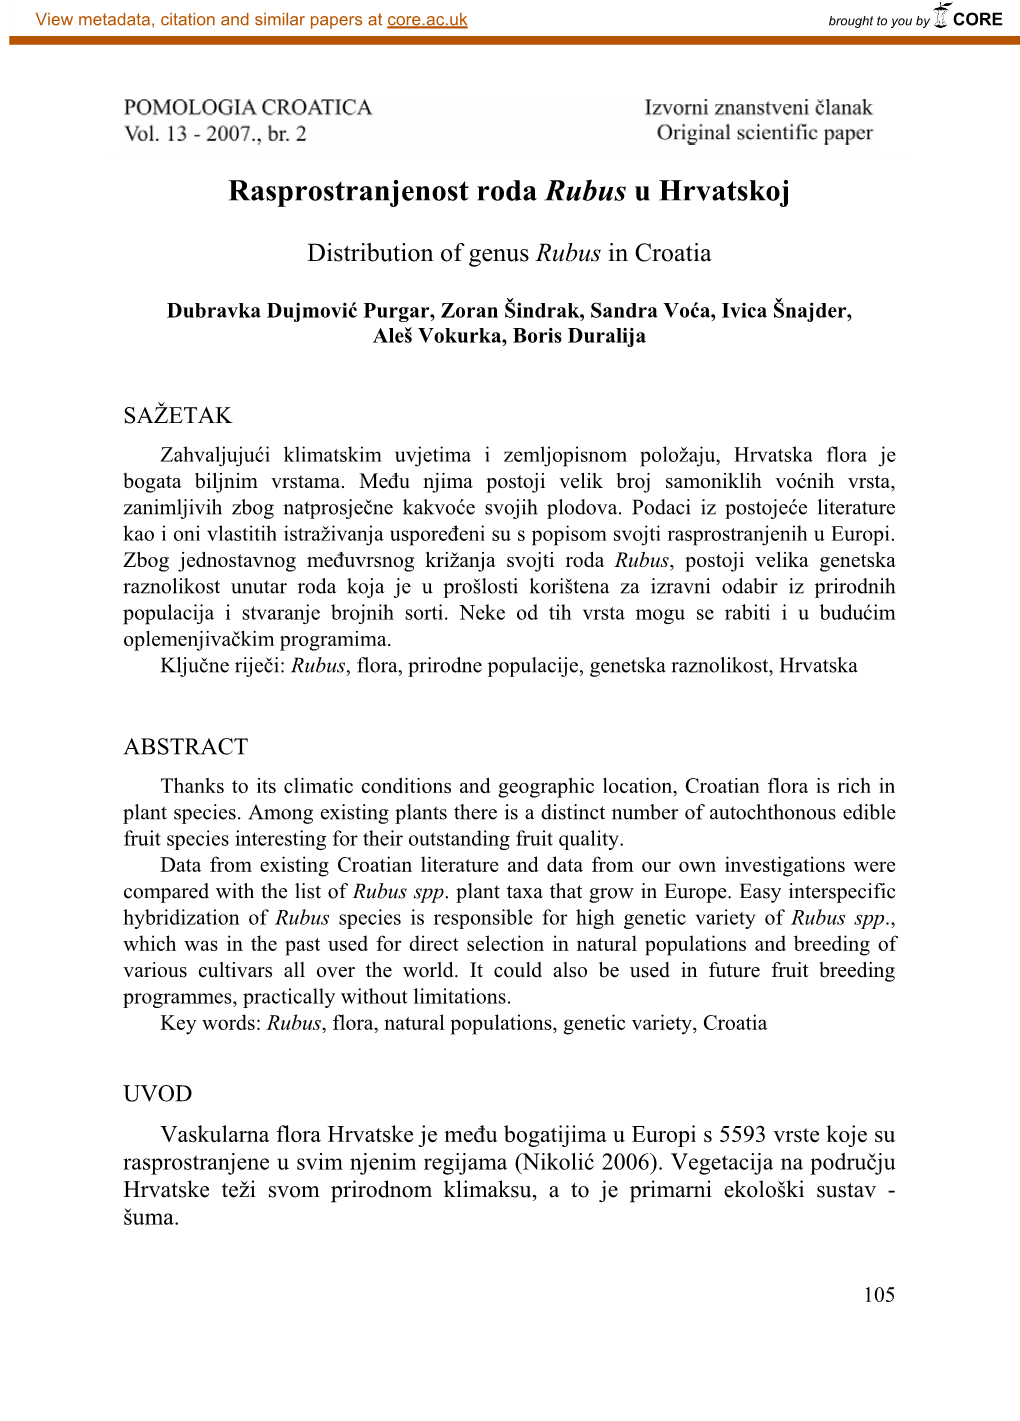 Rasprostranjenost Roda Rubus U Hrvatskoj